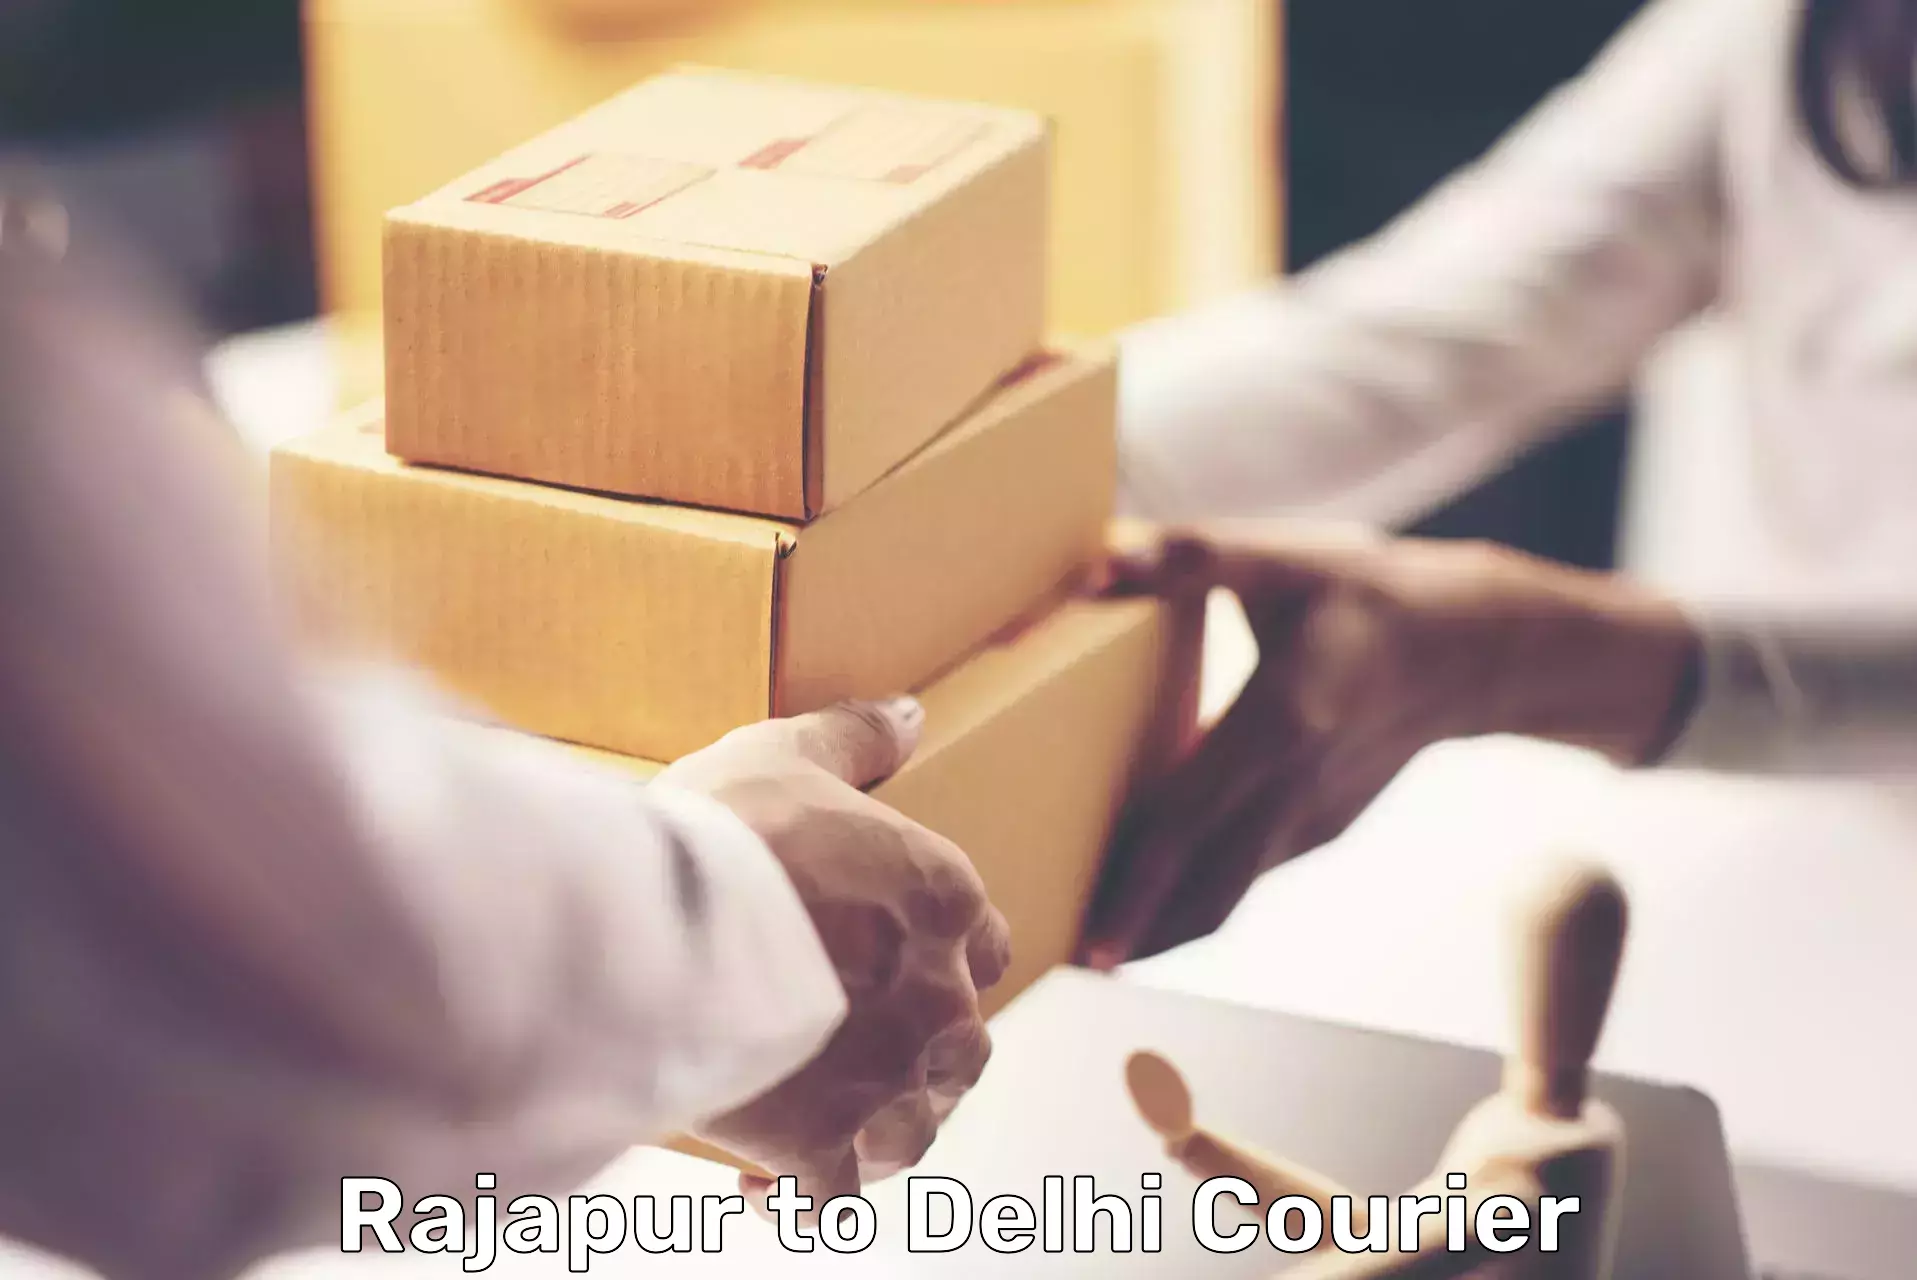 Express logistics Rajapur to Jamia Millia Islamia New Delhi